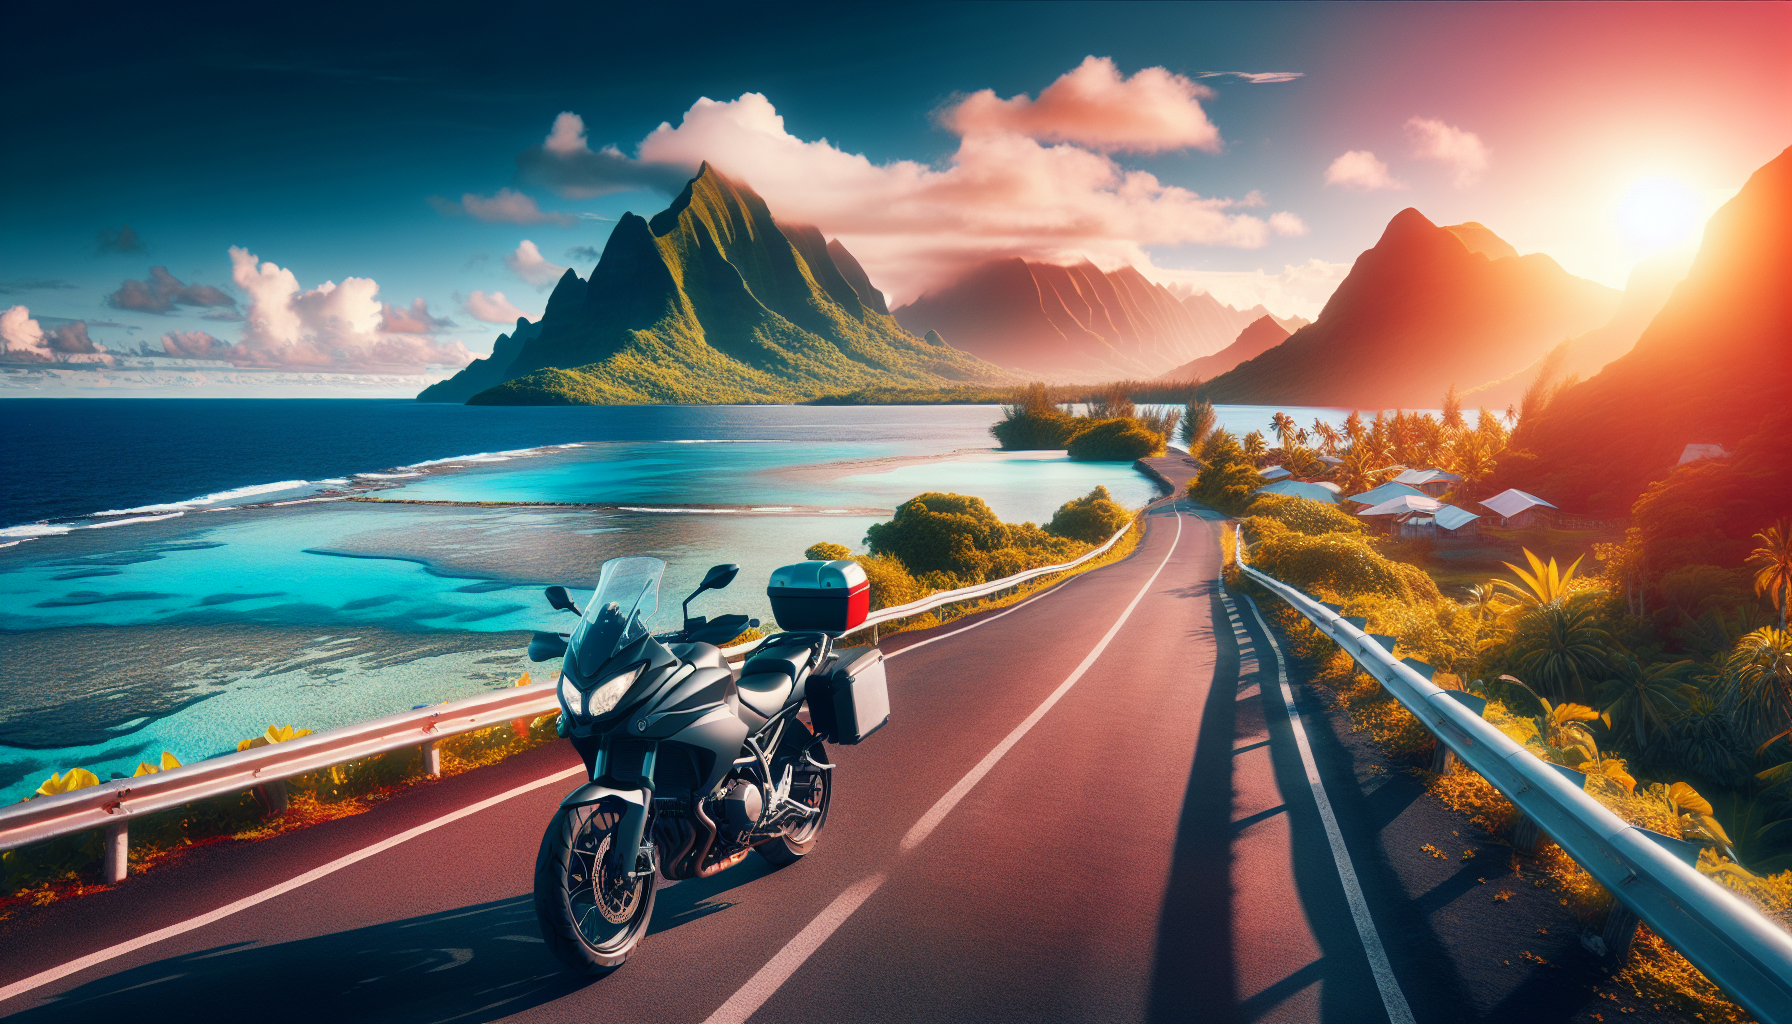 découvrez les avantages d'une assurance moto à la réunion. obtenez une assurance moto 974 adaptée à vos besoins pour une protection optimale sur les routes de l'île.